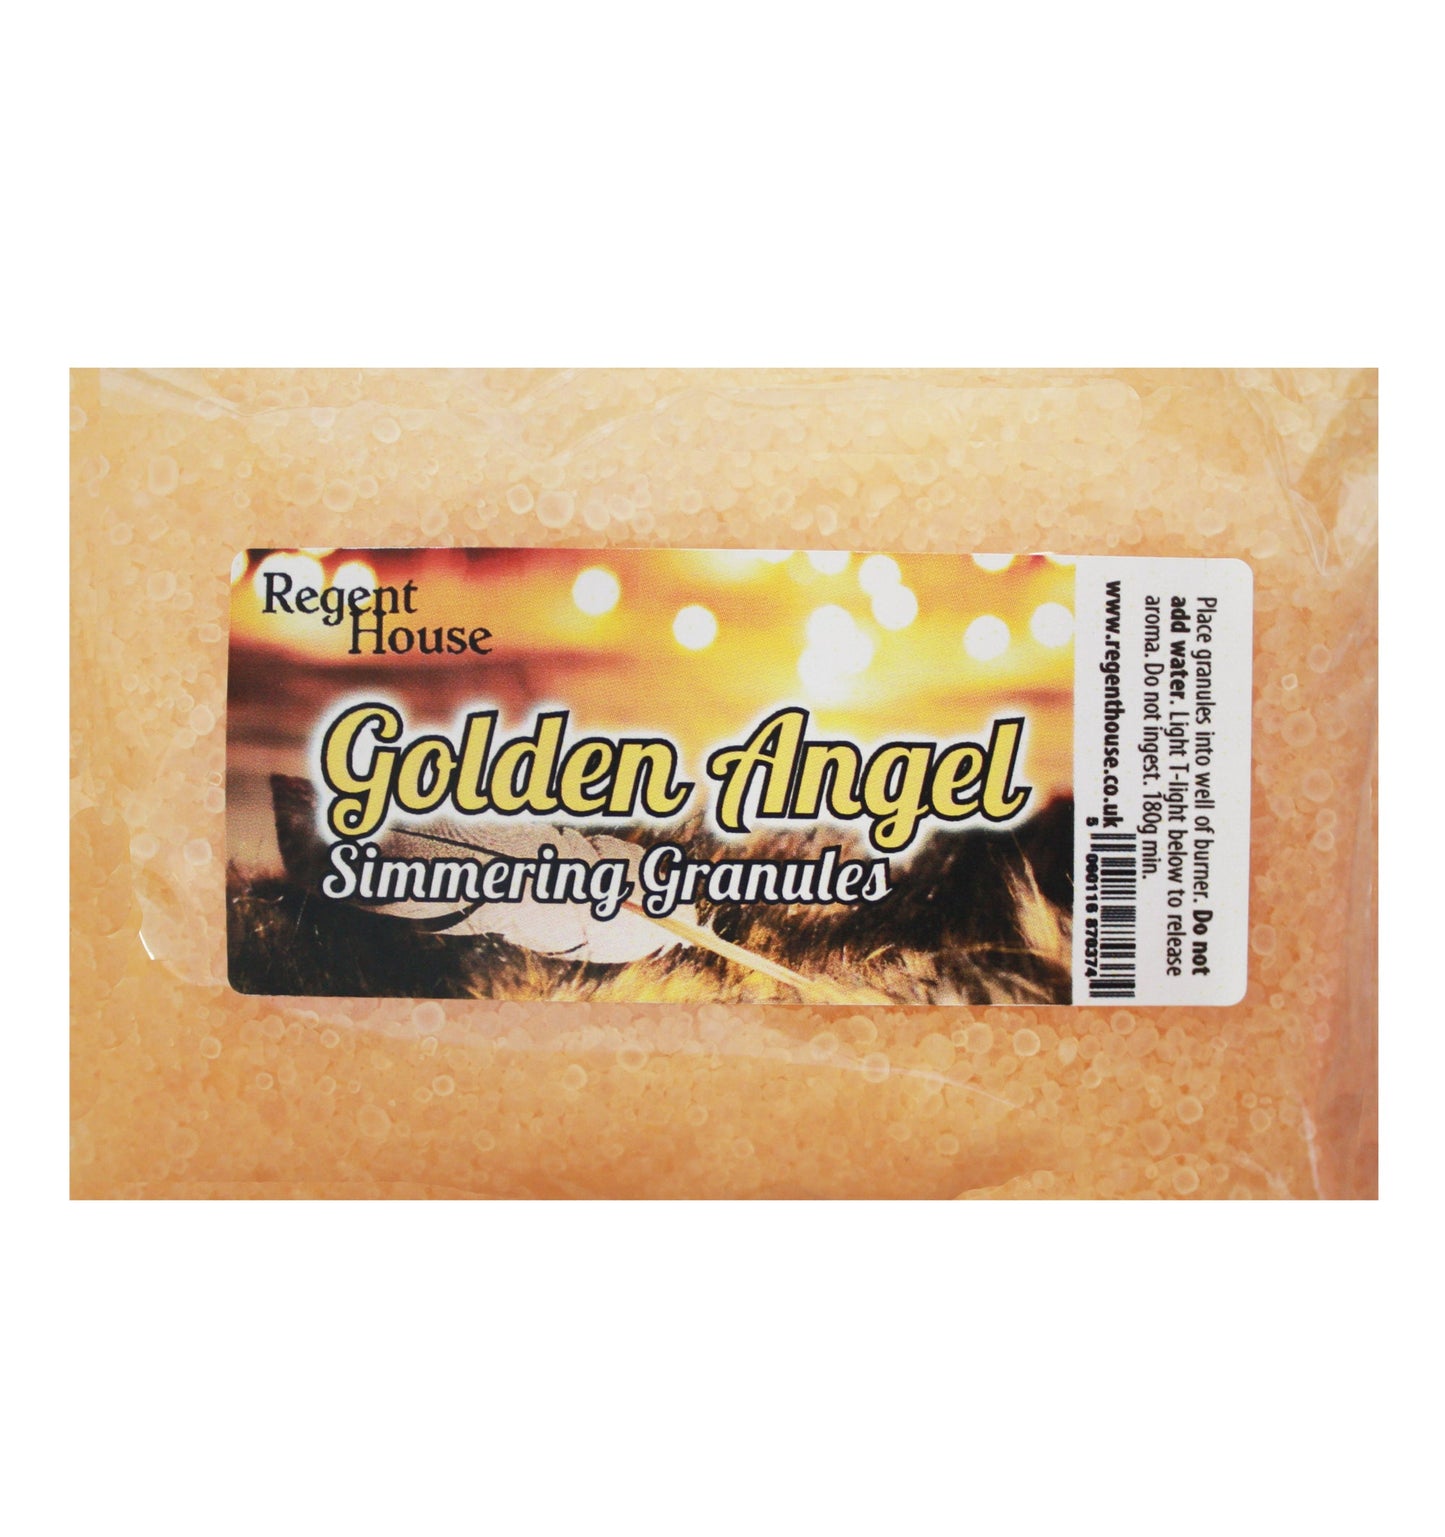 Golden Angel Simmering Granules